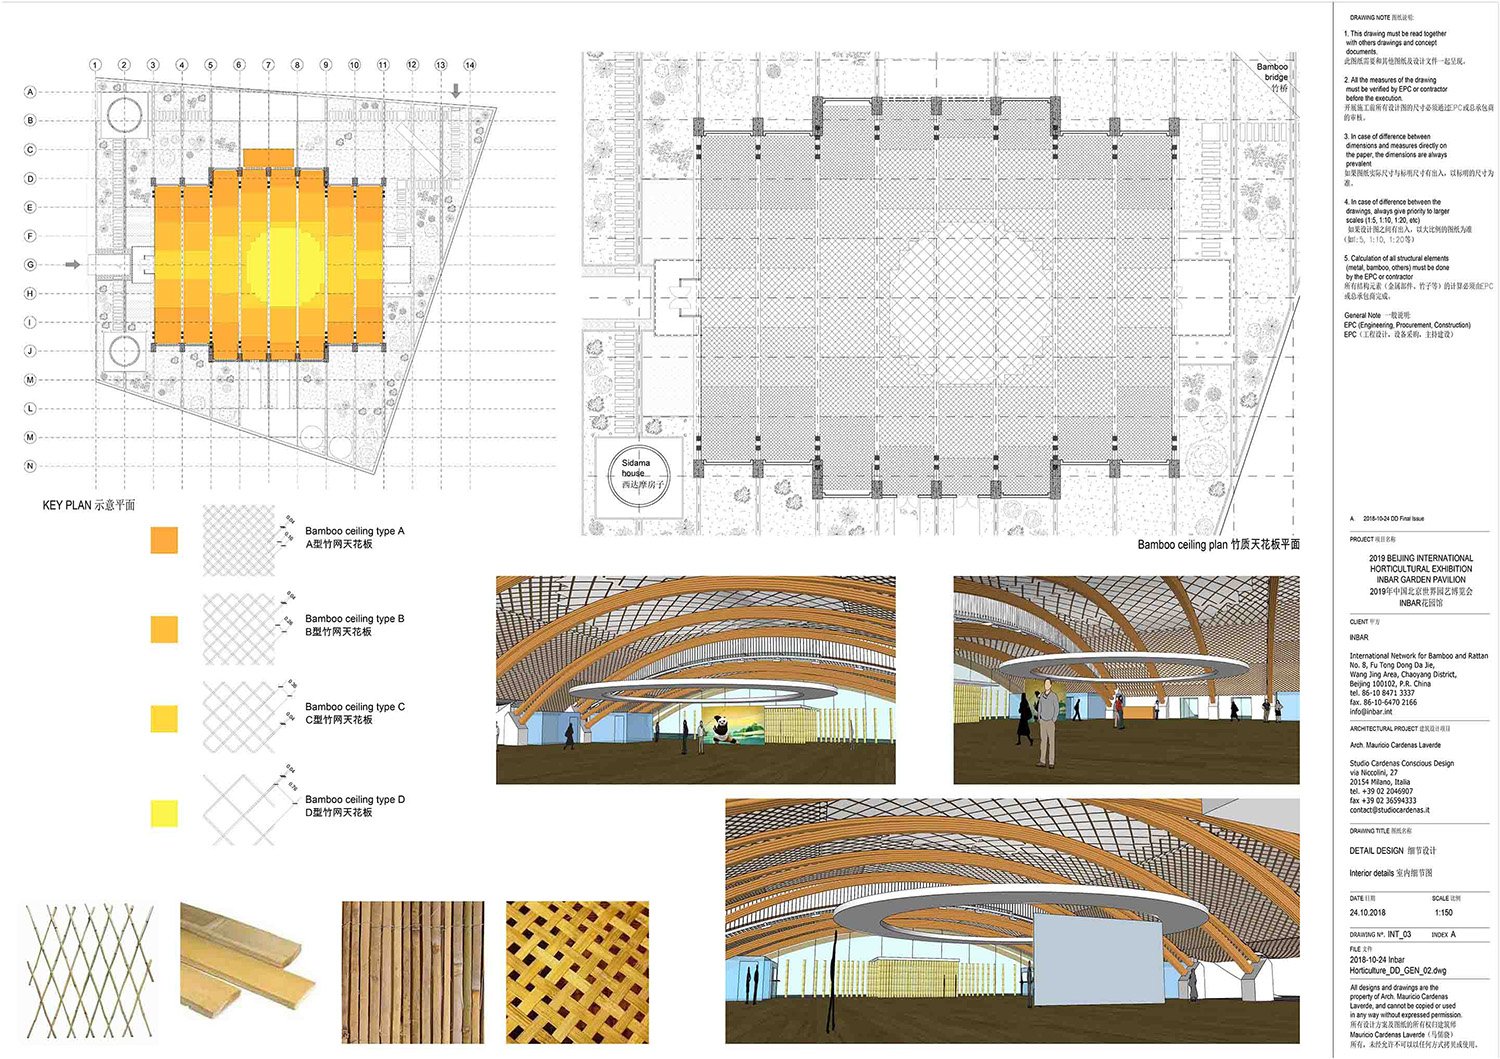 tavola del controsoffitto in intrecciato di bambù | Studio Cardenas Conscious Design